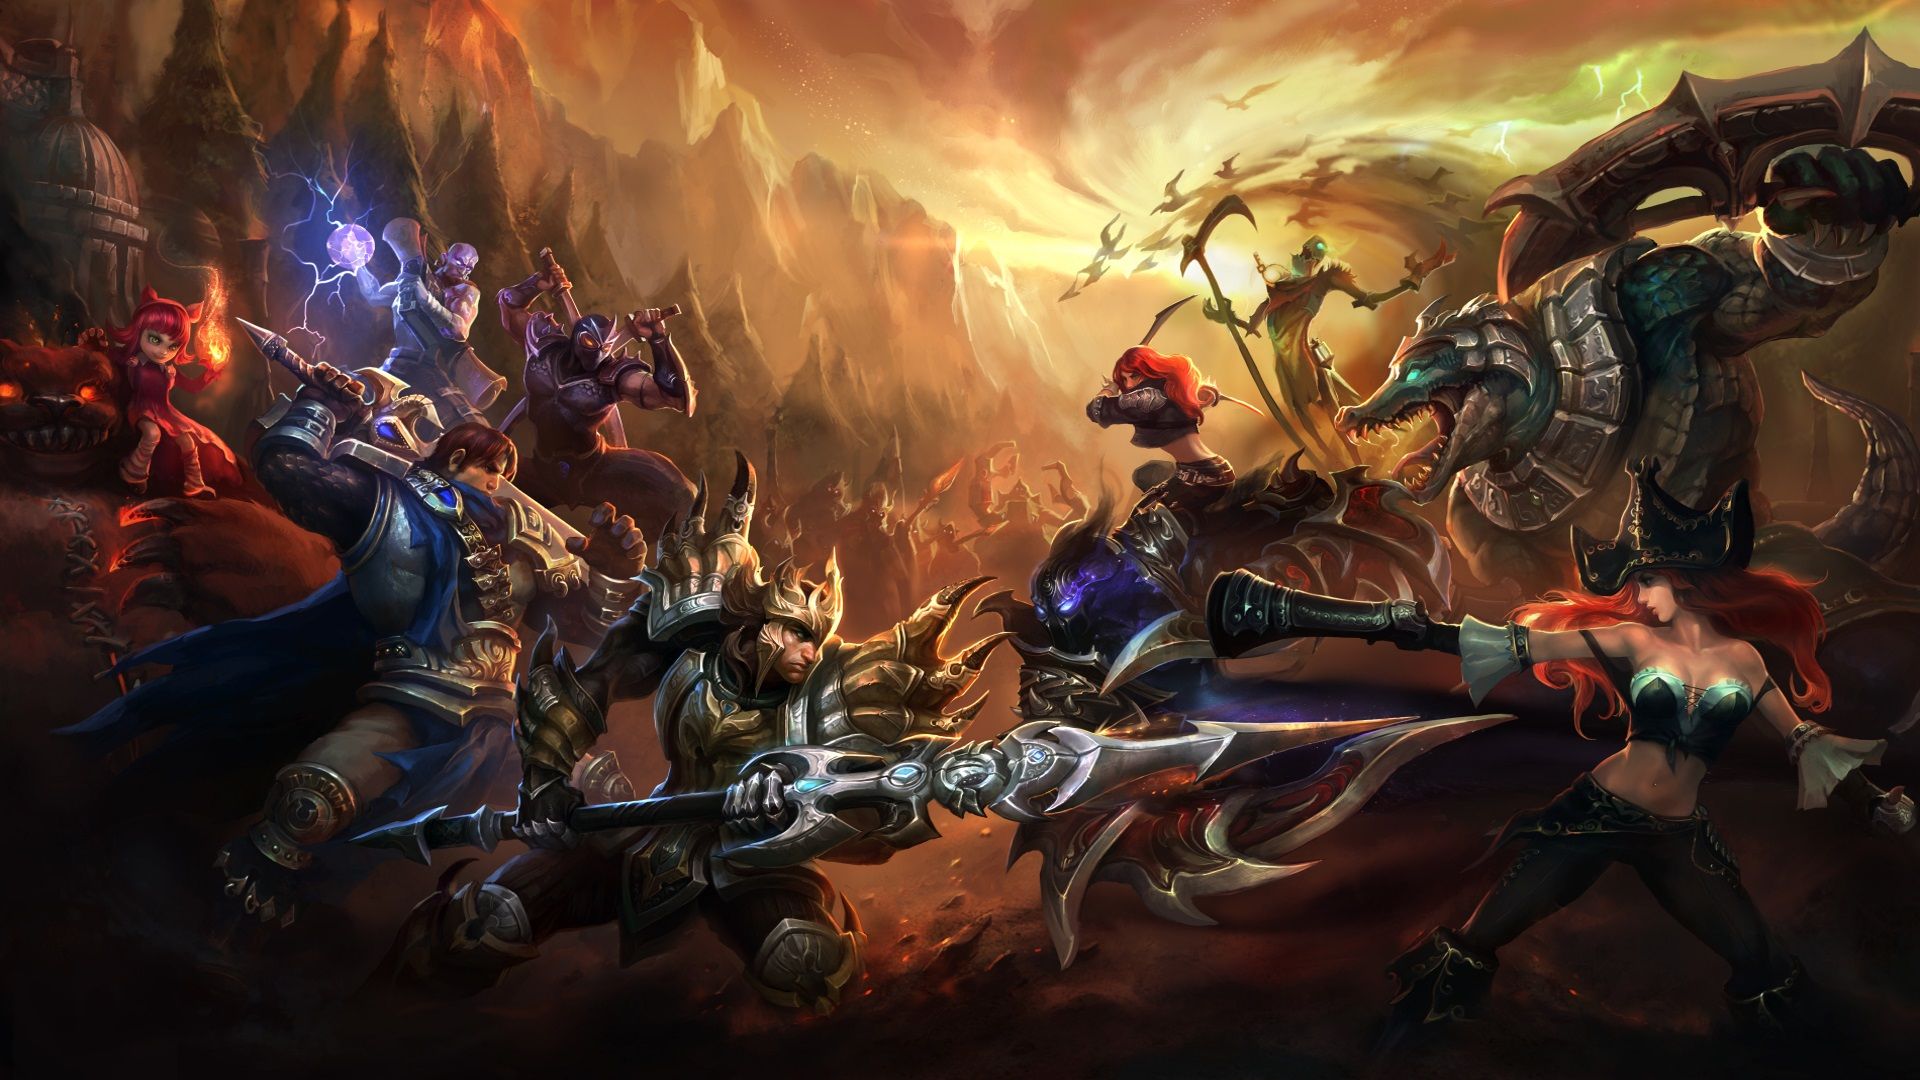 Los mejores juegos gratuitos para PC: League of Legends. La imagen muestra un gran grupo de guerreros y criaturas fantásticas a punto de luchar.